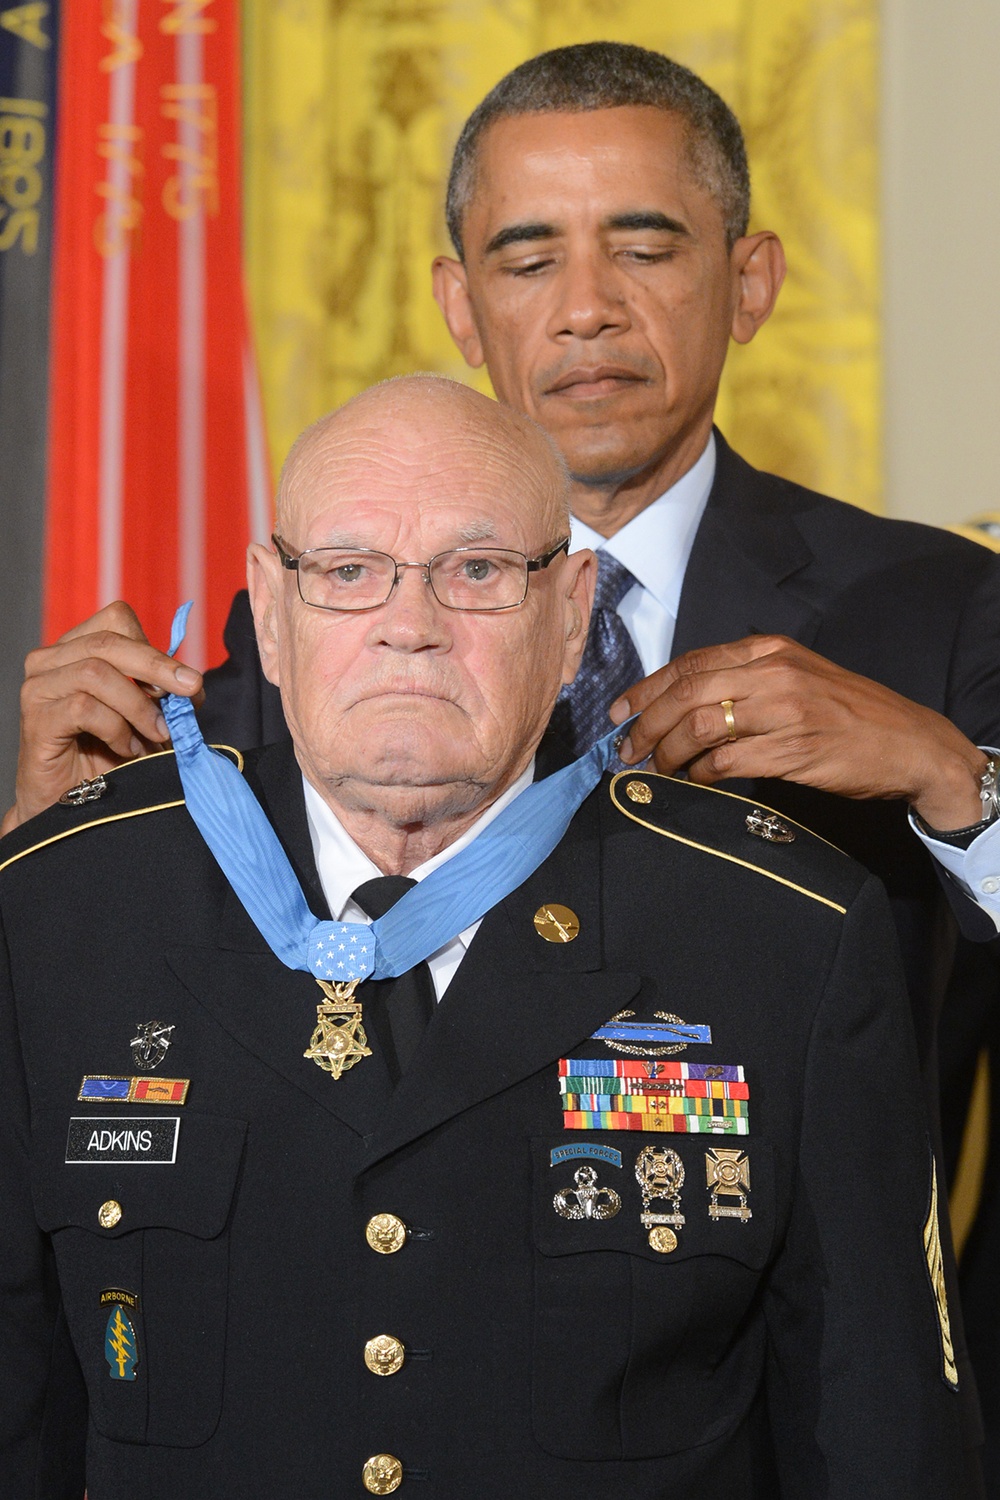 President awards Medal of Honor